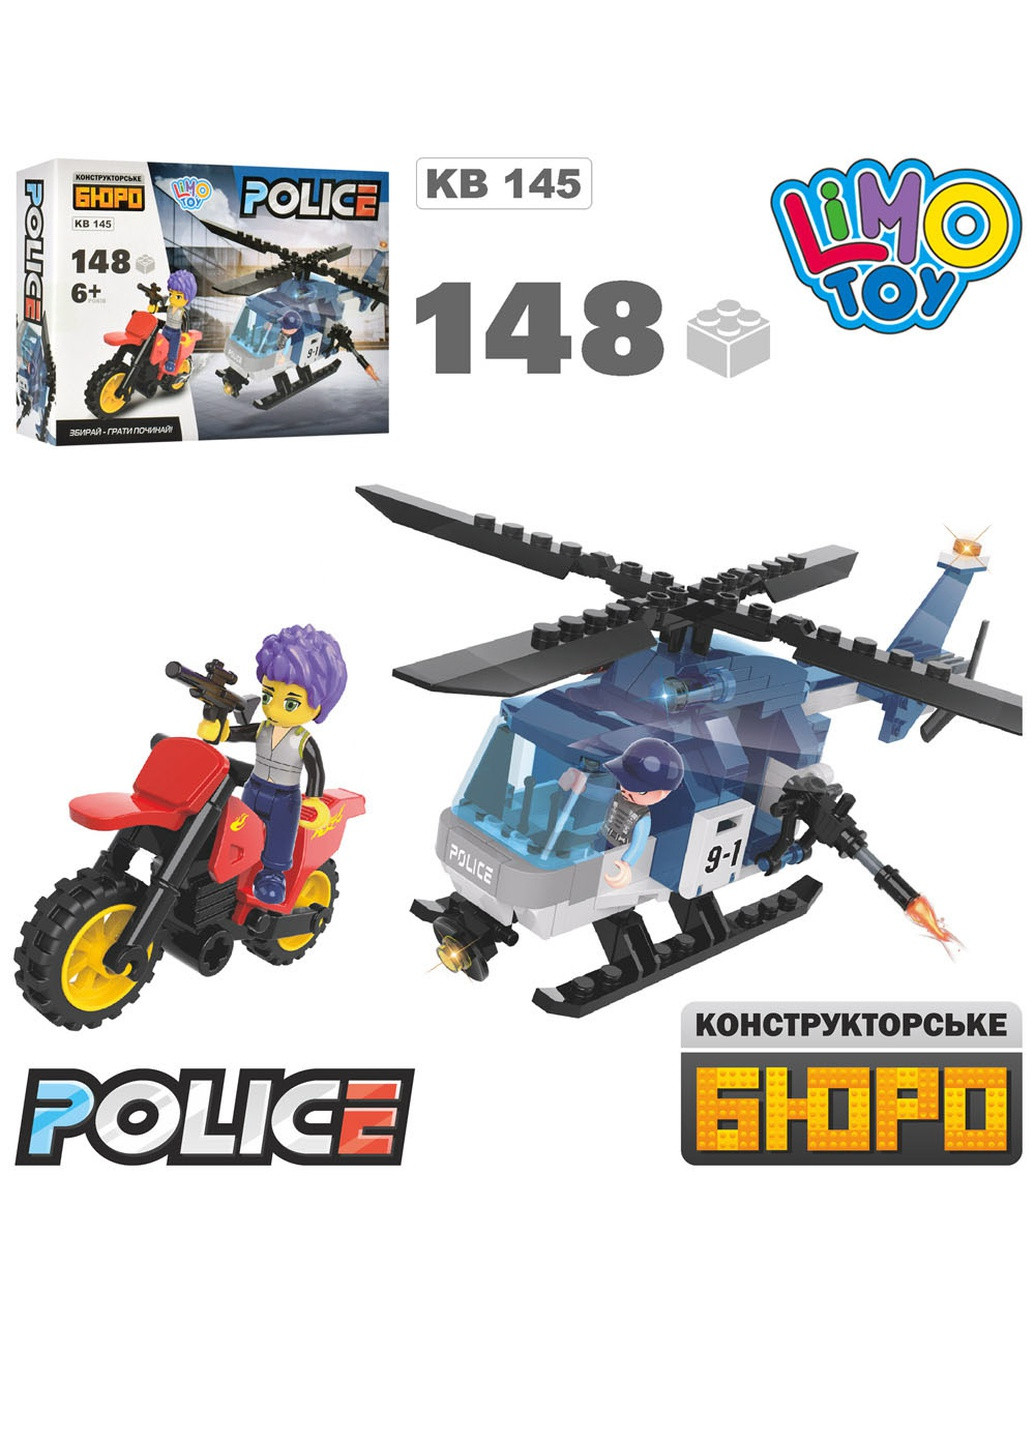 Конструктор "Поліція" Limo Toy (255597422)